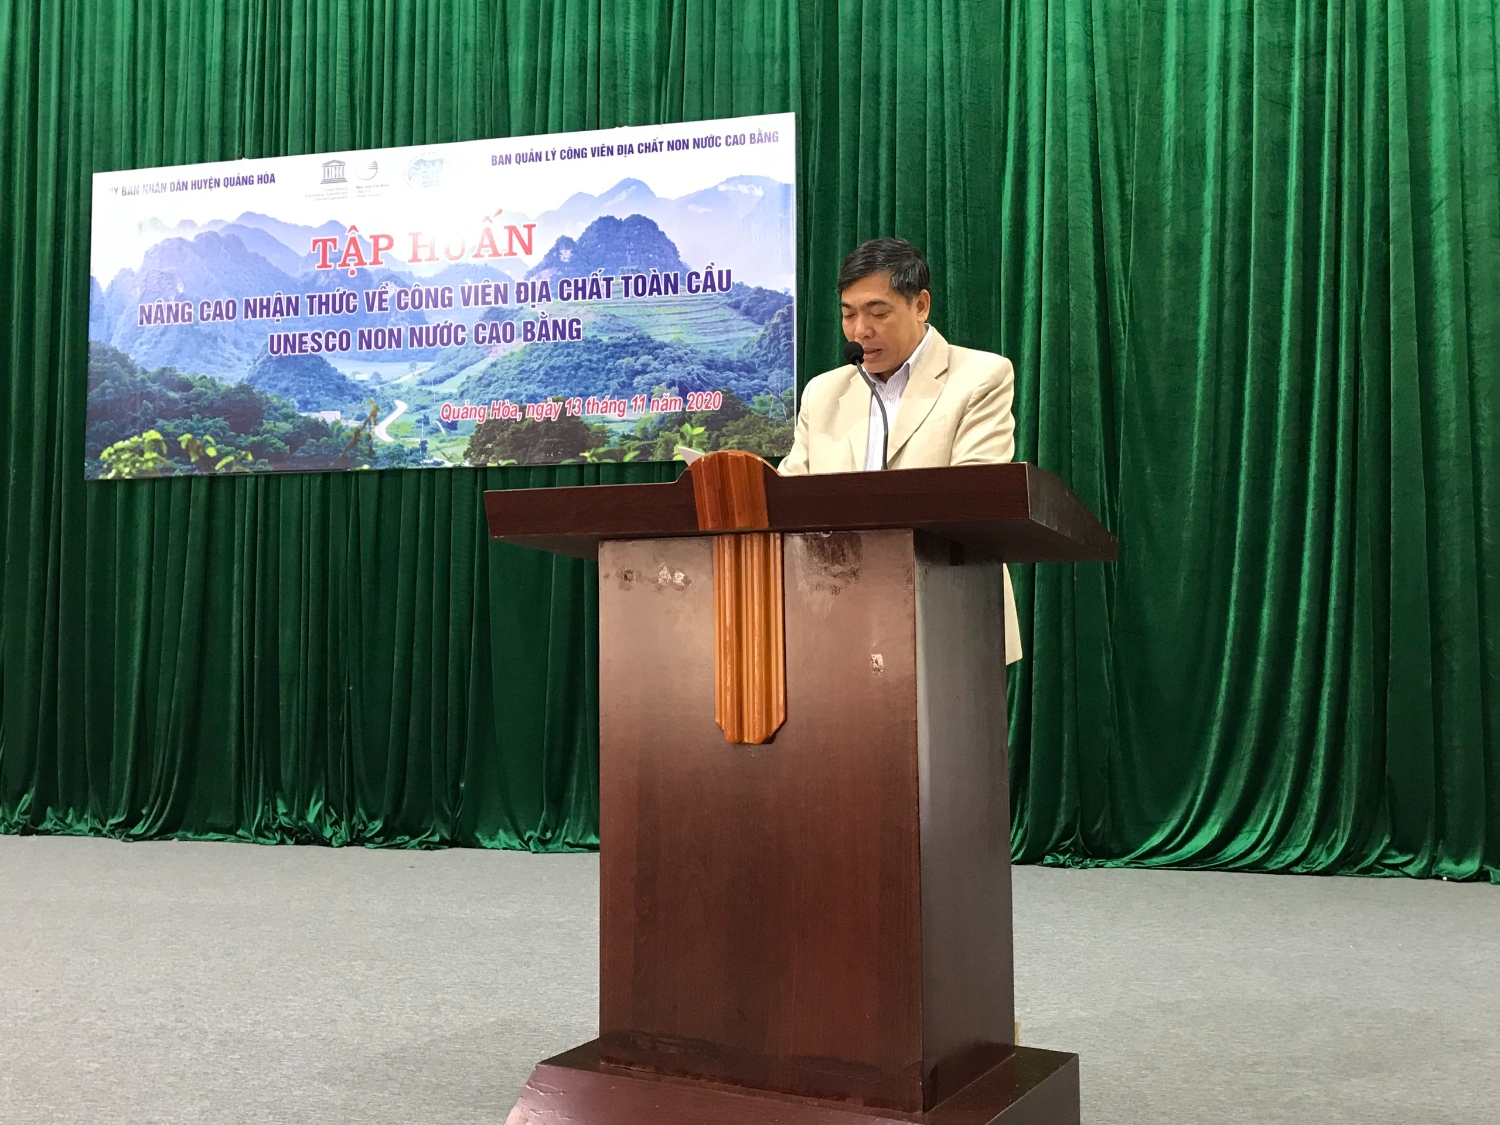 Tập huấn về công tác lập kế hoạch phát triển du lịch bền vững gắn với CVĐC Toàn cầu Unesco trên địa bàn huyện Quảng Hoà